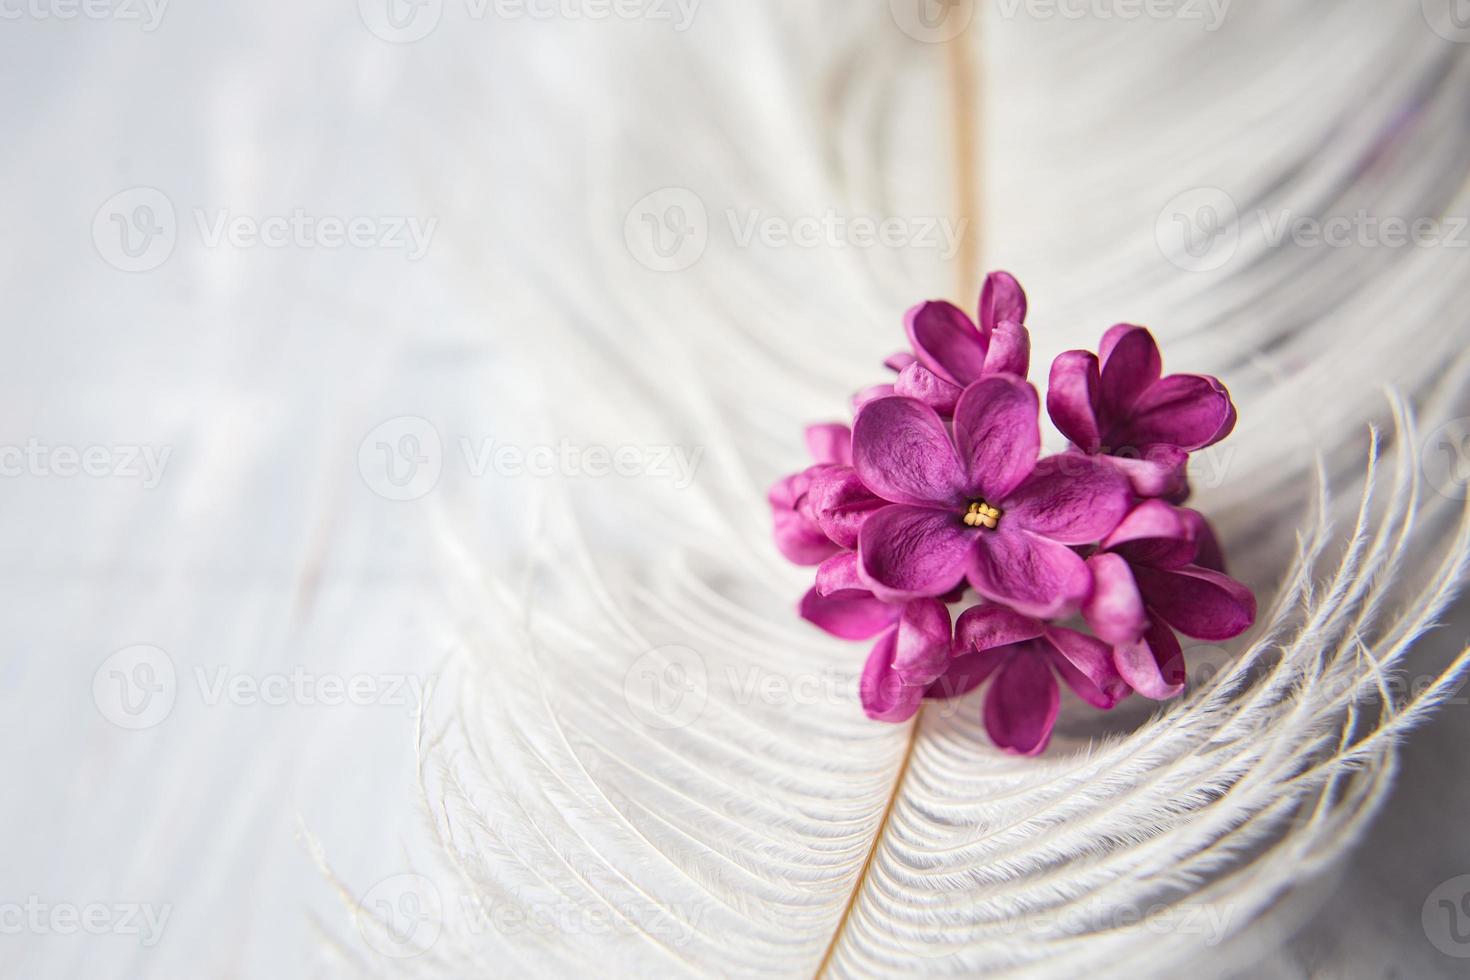 flores violetas lilas sobre una pluma de avestruz blanca. una suerte lila - flor con cinco pétalos entre las flores de cuatro puntas de lila rosa brillante. la magia de las flores lilas de cinco pétalos. Bosquejo foto